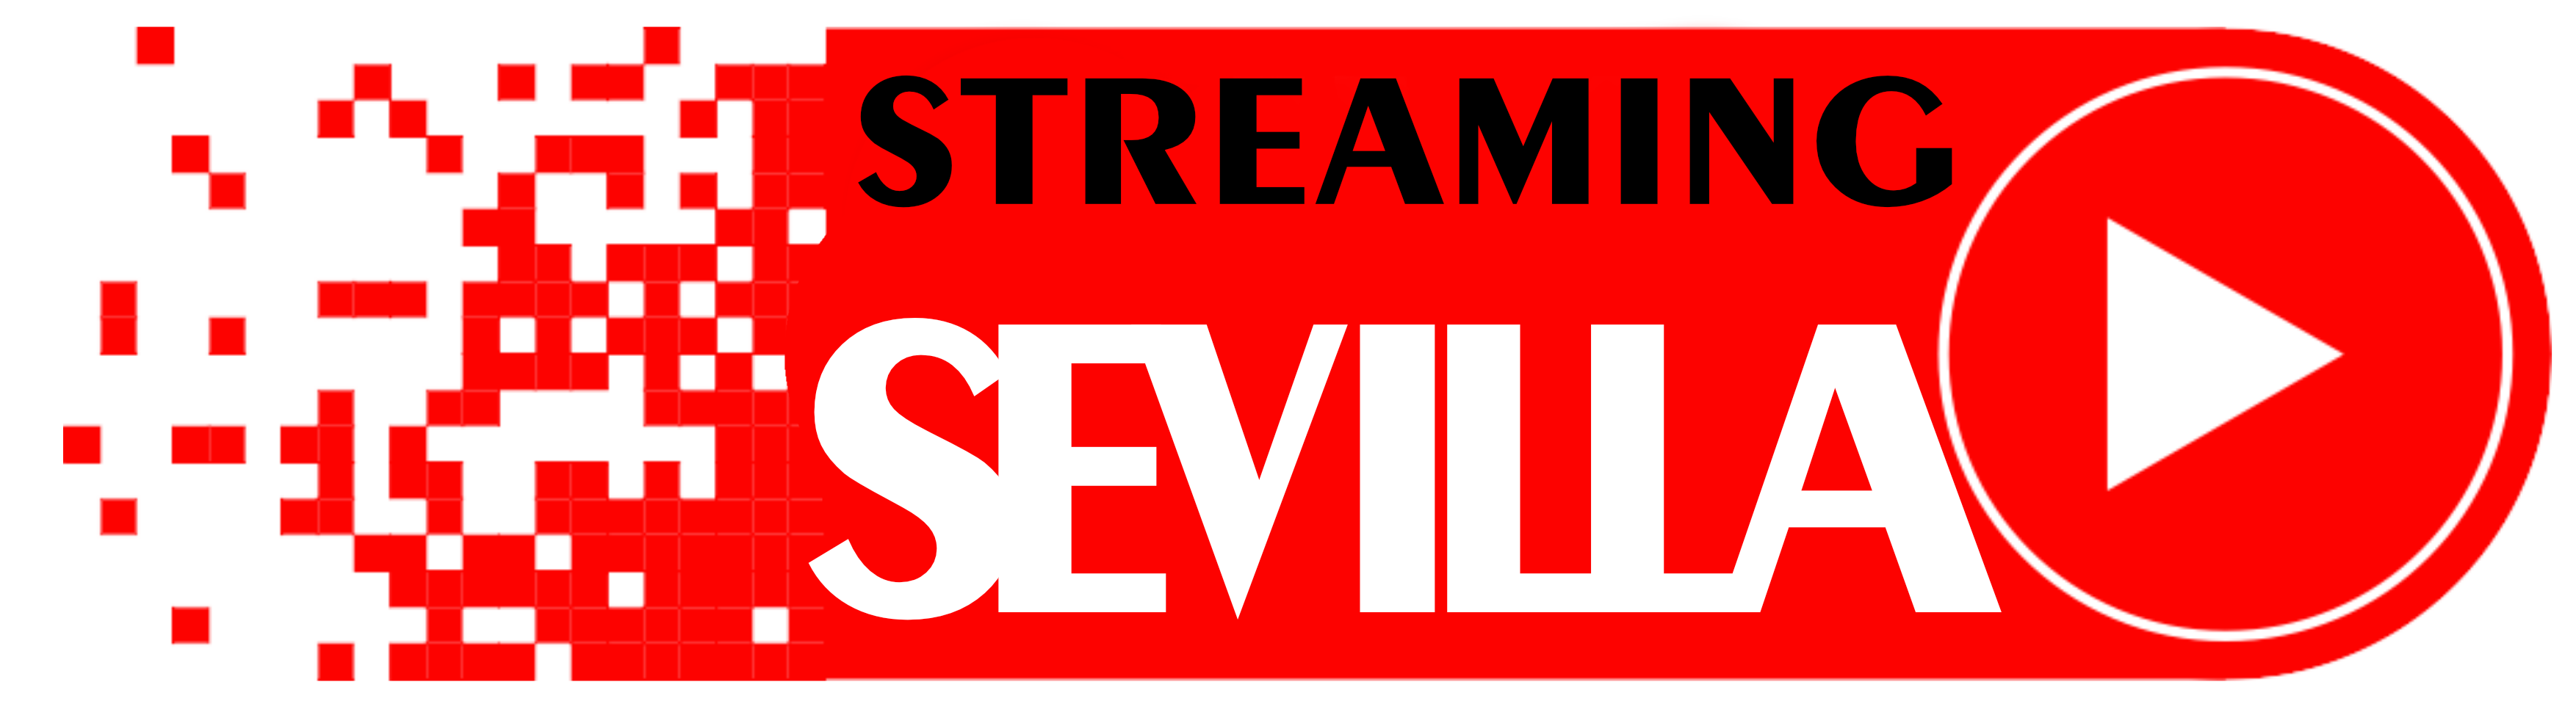 Streaming Sevilla